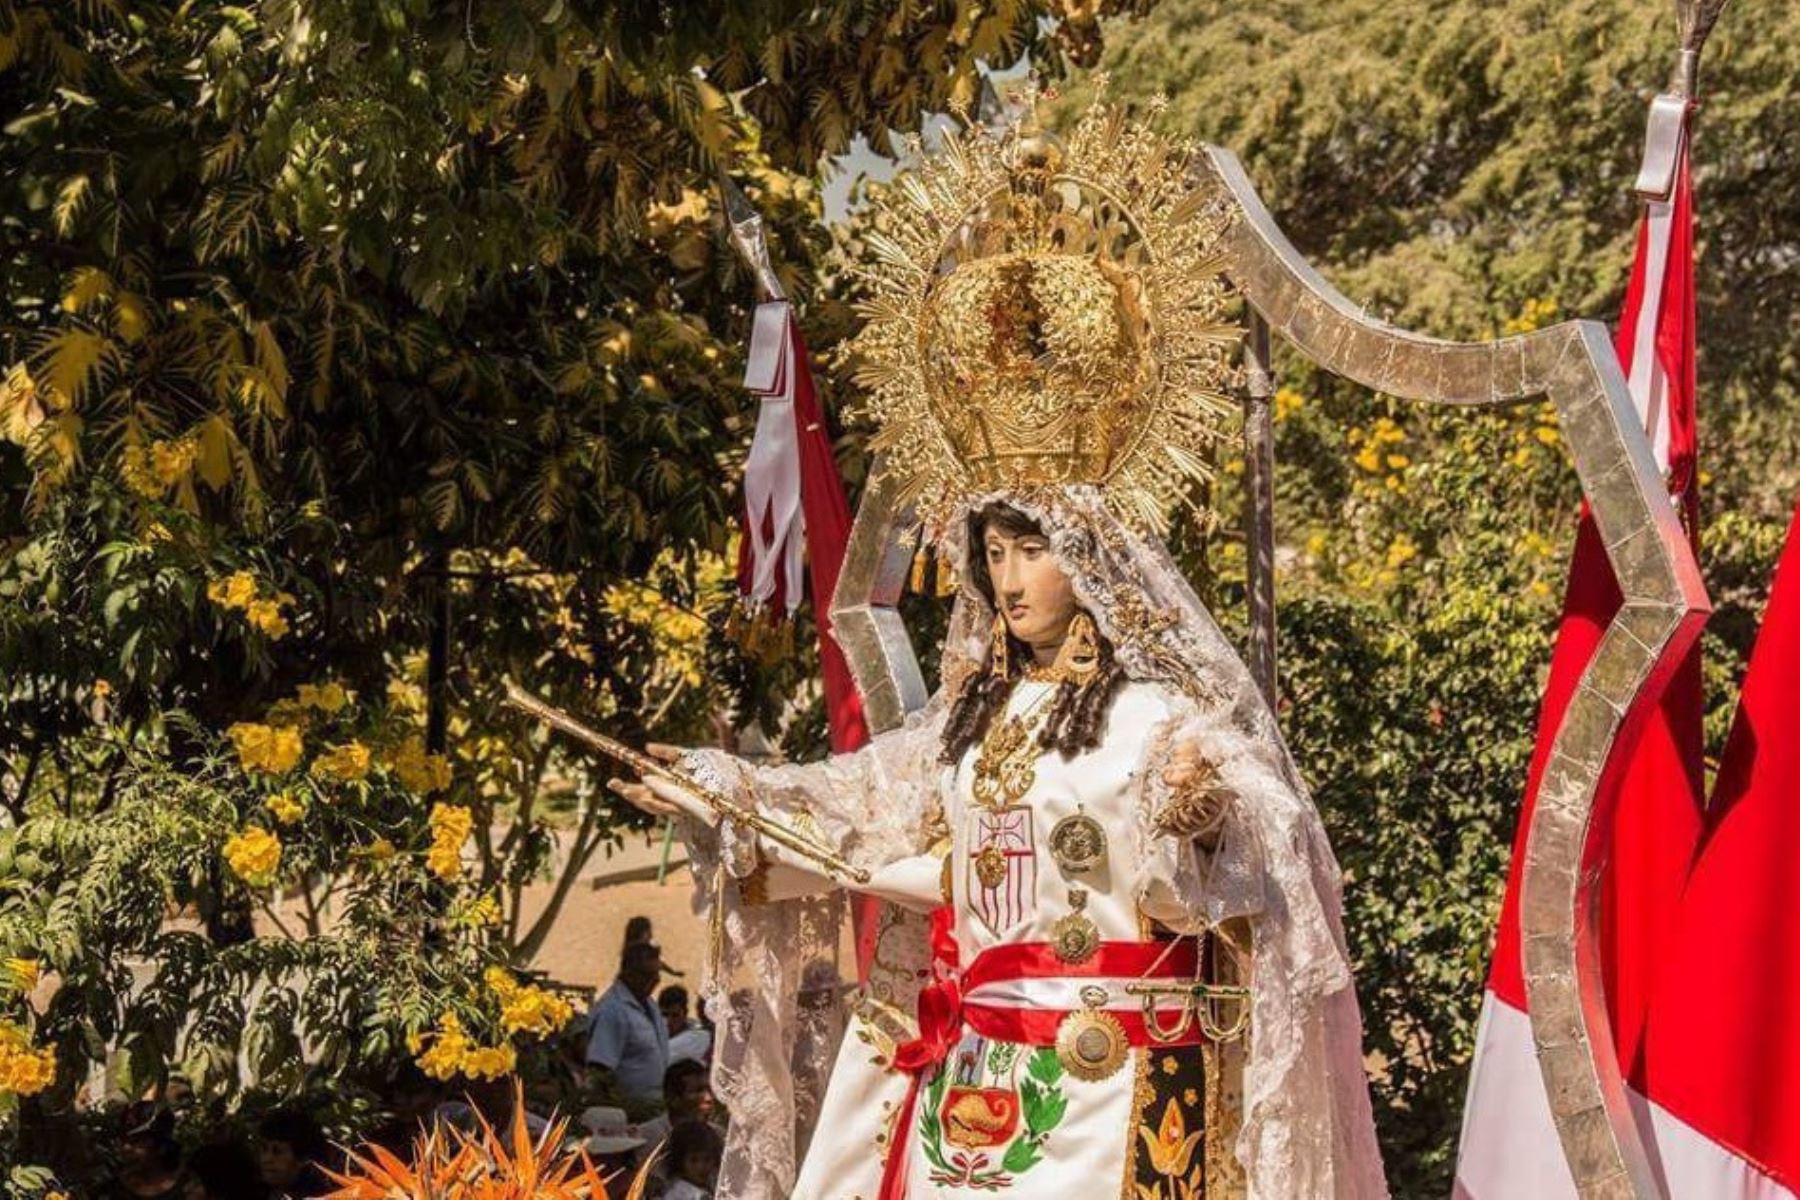 La Virgen de las Mercedes, cuya devoción en el Perú se remonta a los primeros años de la conquista española, continúa hasta nuestros días con gran veneración en las regiones y en instituciones como las Fuerzas Armadas que le rinden honores como su patrona.